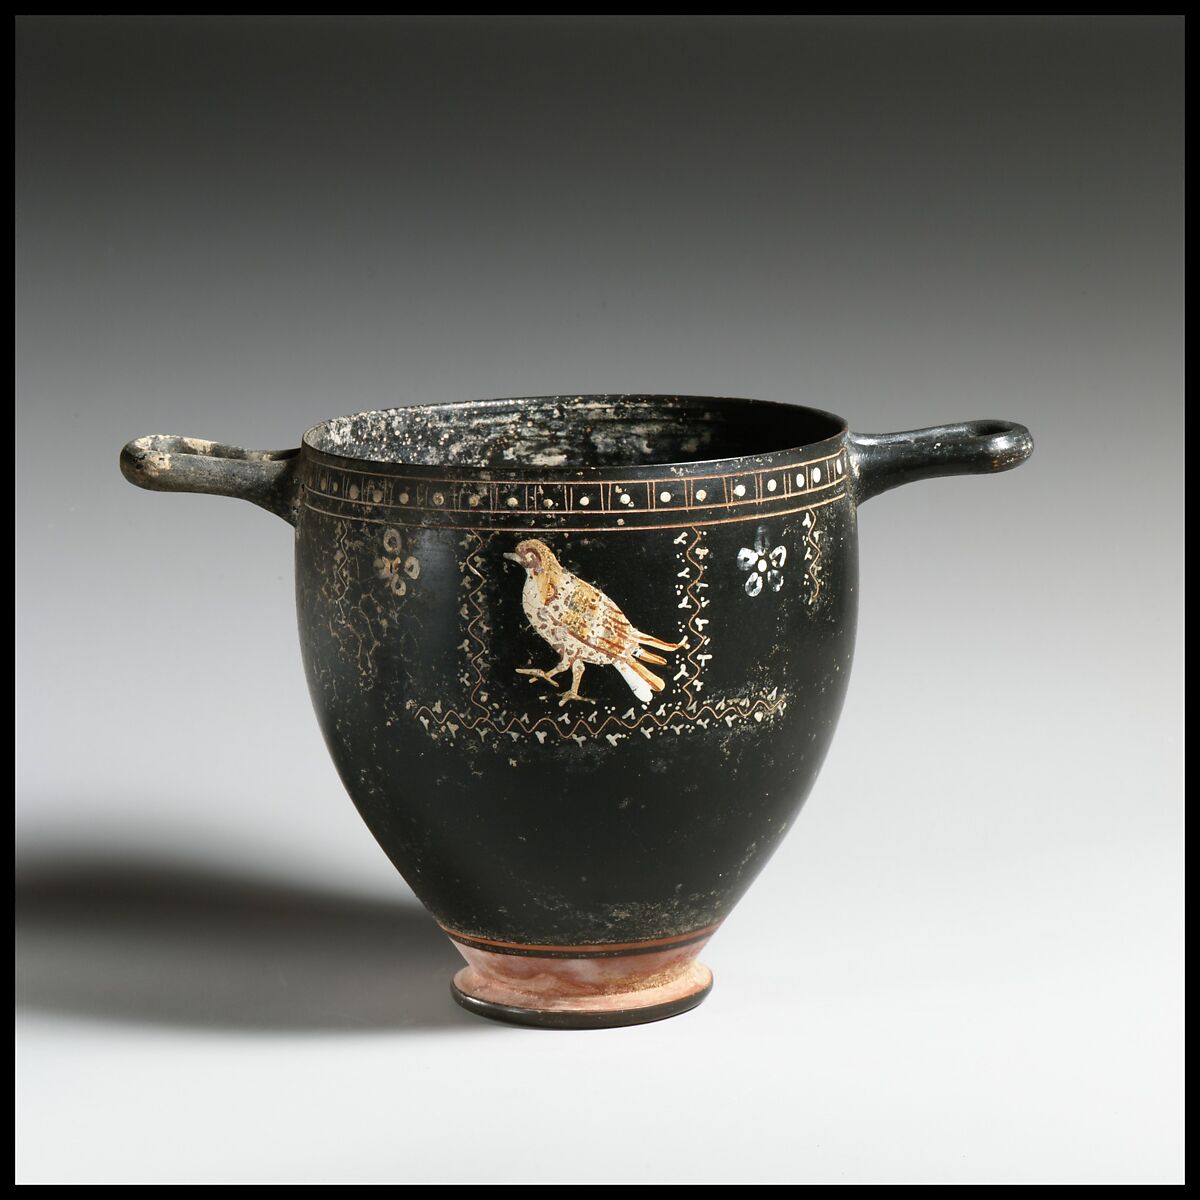 Terracotta skyphos (deep drinking cup), Terracotta, Greek, South Italian, Apulian, Gnathian 